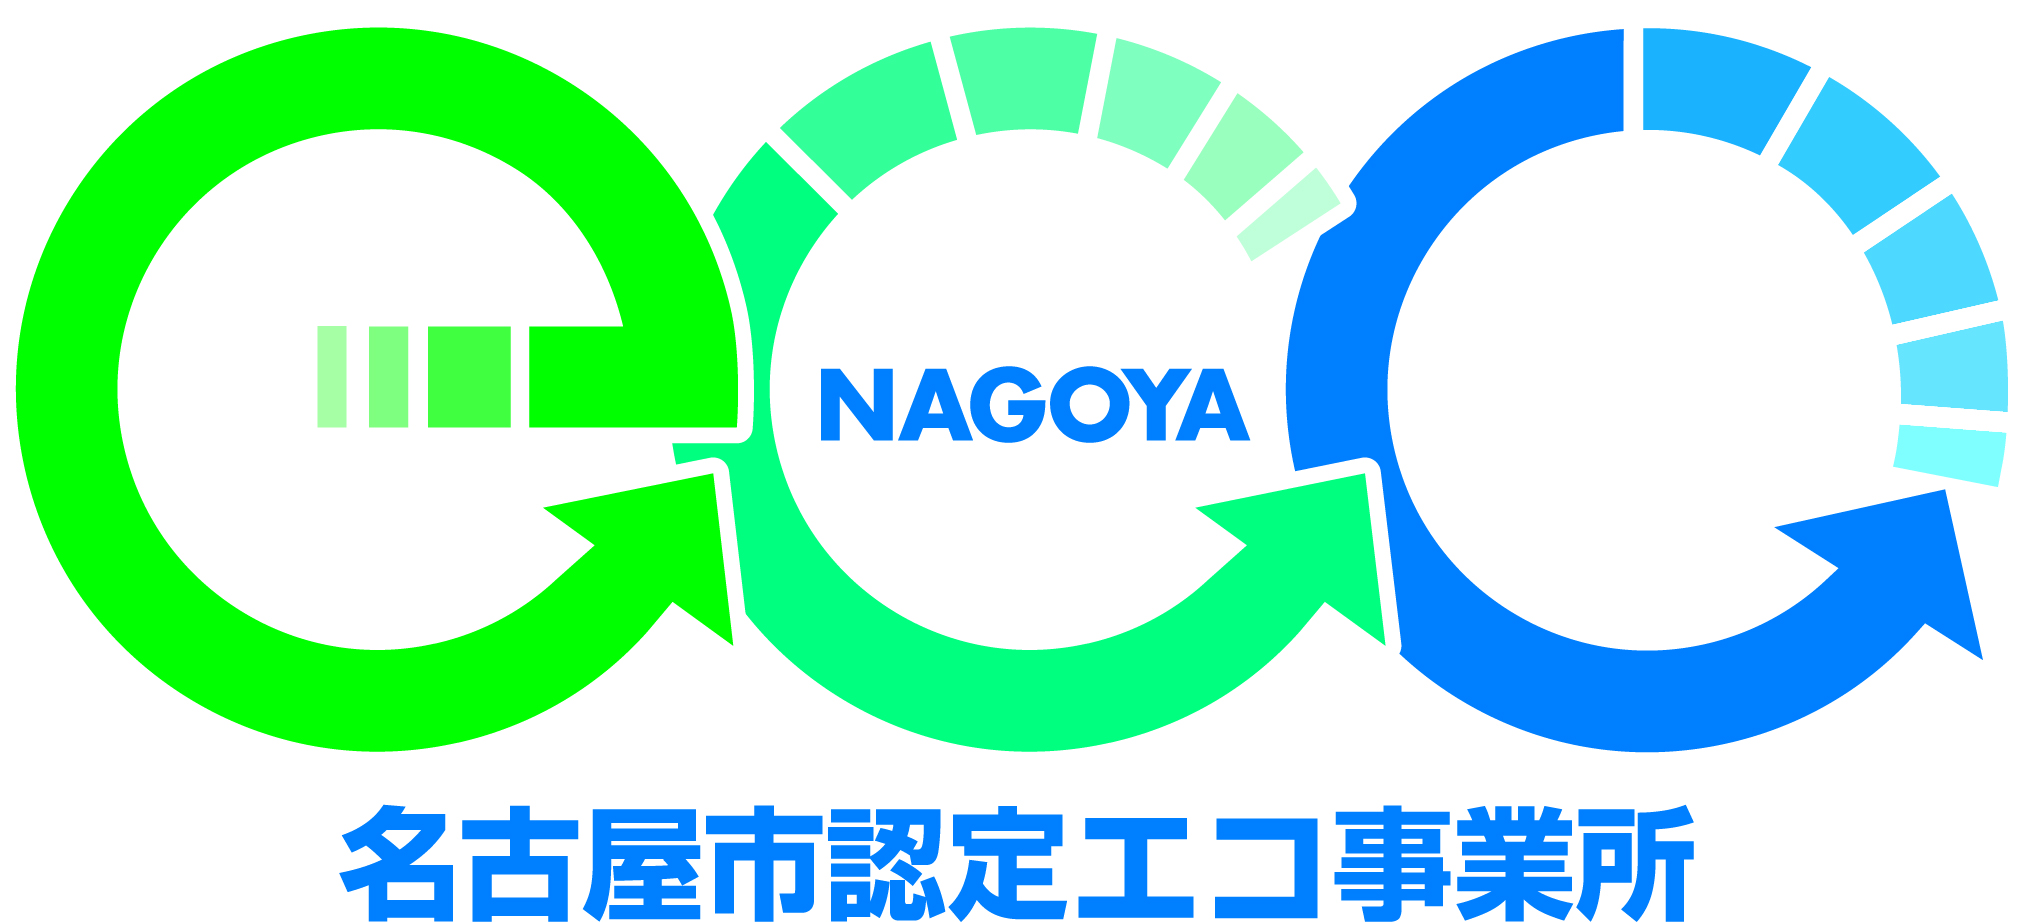 名古屋市認定制度「エコ事業所」を取得